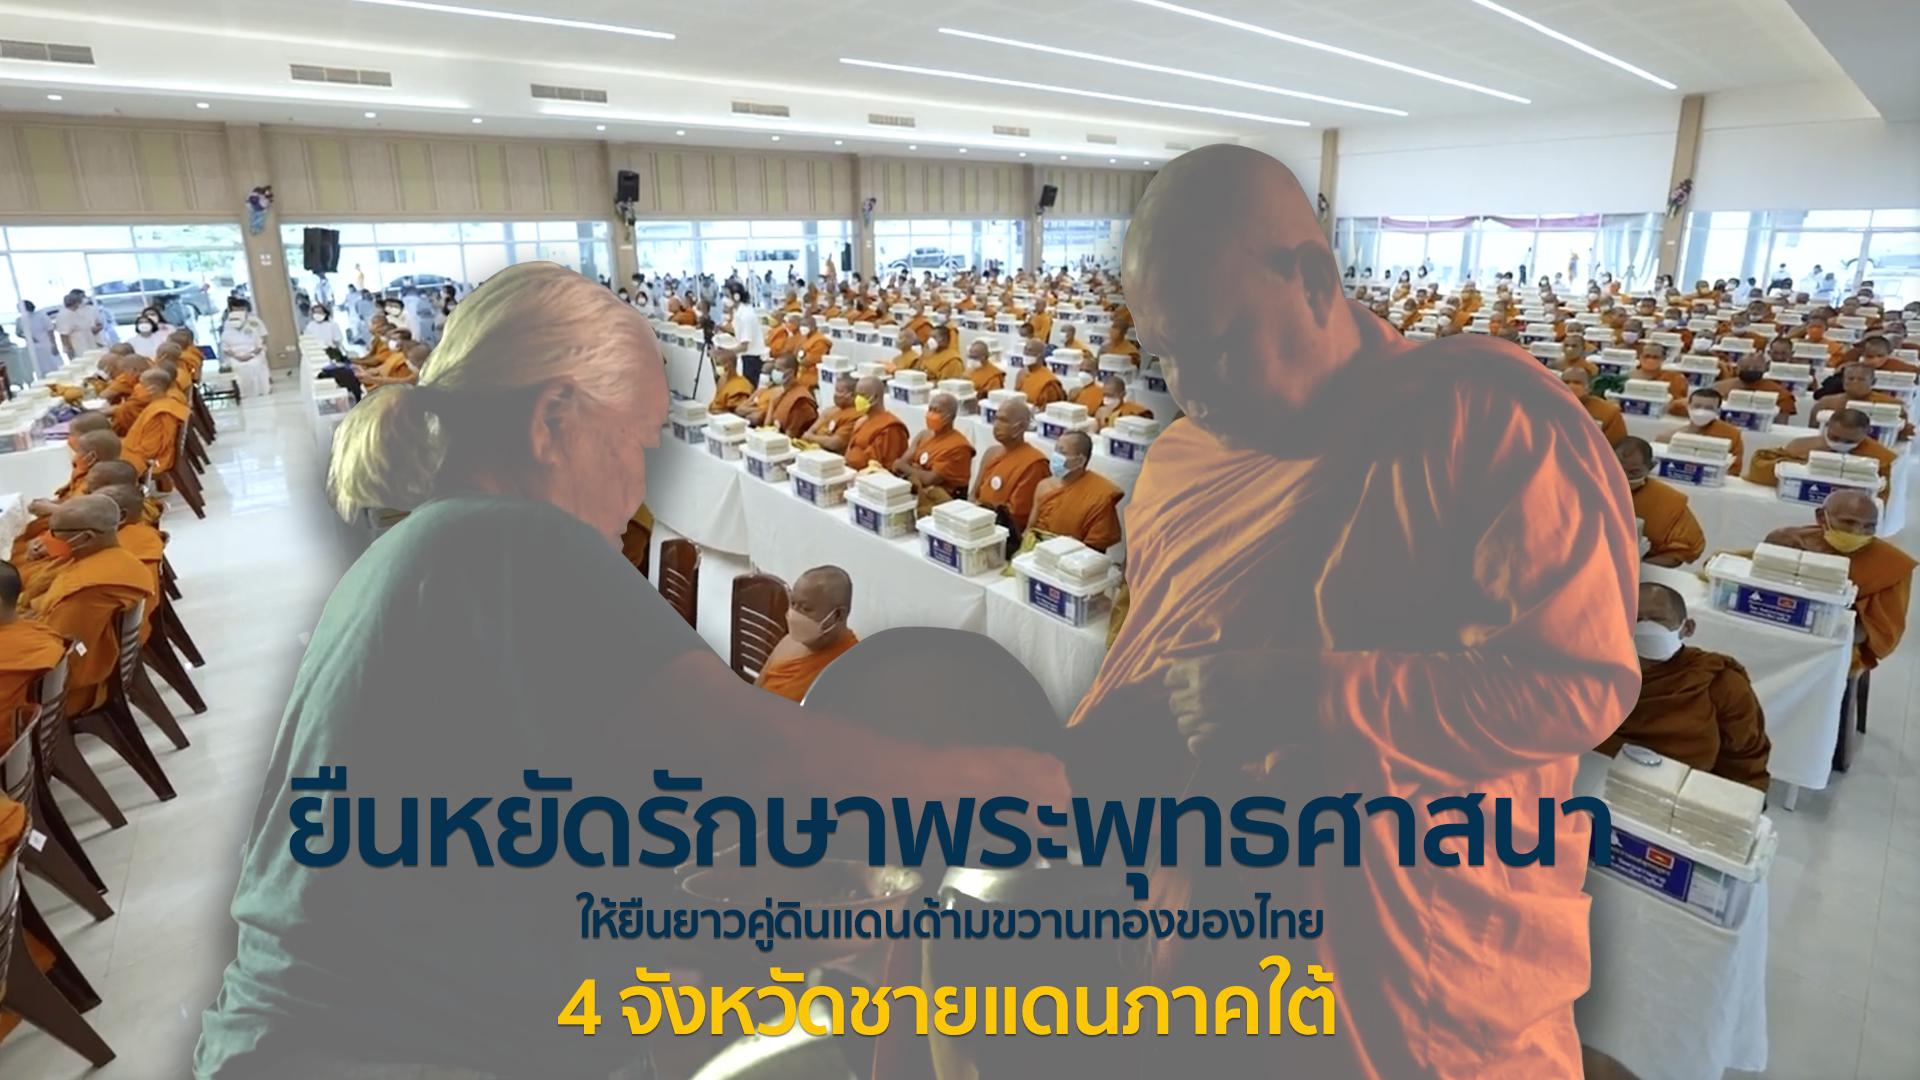 ยืนหยัดรักษาพระพุทธศาสนาให้ยืนยาวคู่ดินแดนด้ามขวานทองของไทย | พิธีถวายมหาสังฆทานแด่คณะสงฆ์ 323 วัด